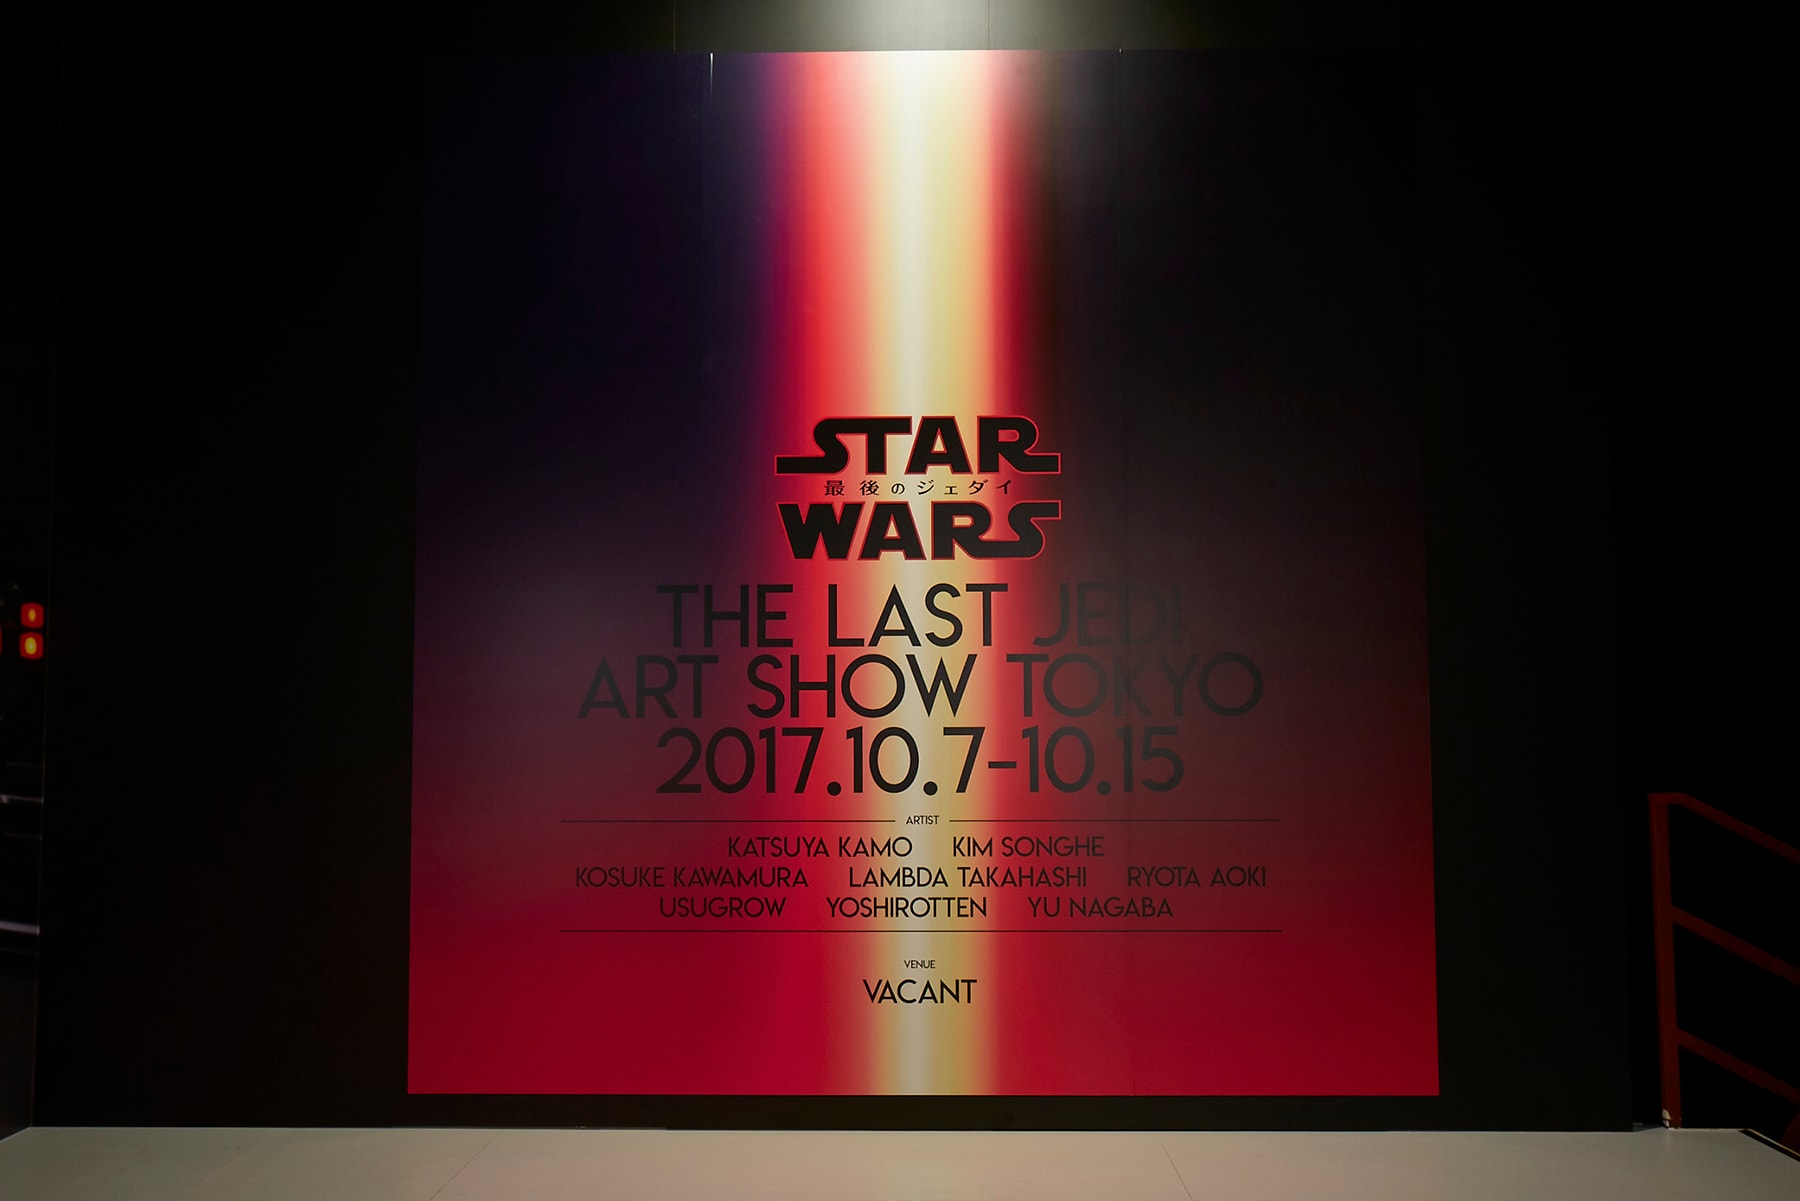 会場には気鋭アーティスト8名の特別作品のみならず、等身大のストームトルーパーも複数体ディスプレイ “STAR WARS THE LAST JEDI ART SHOW TOKYO” の会場写真が公開